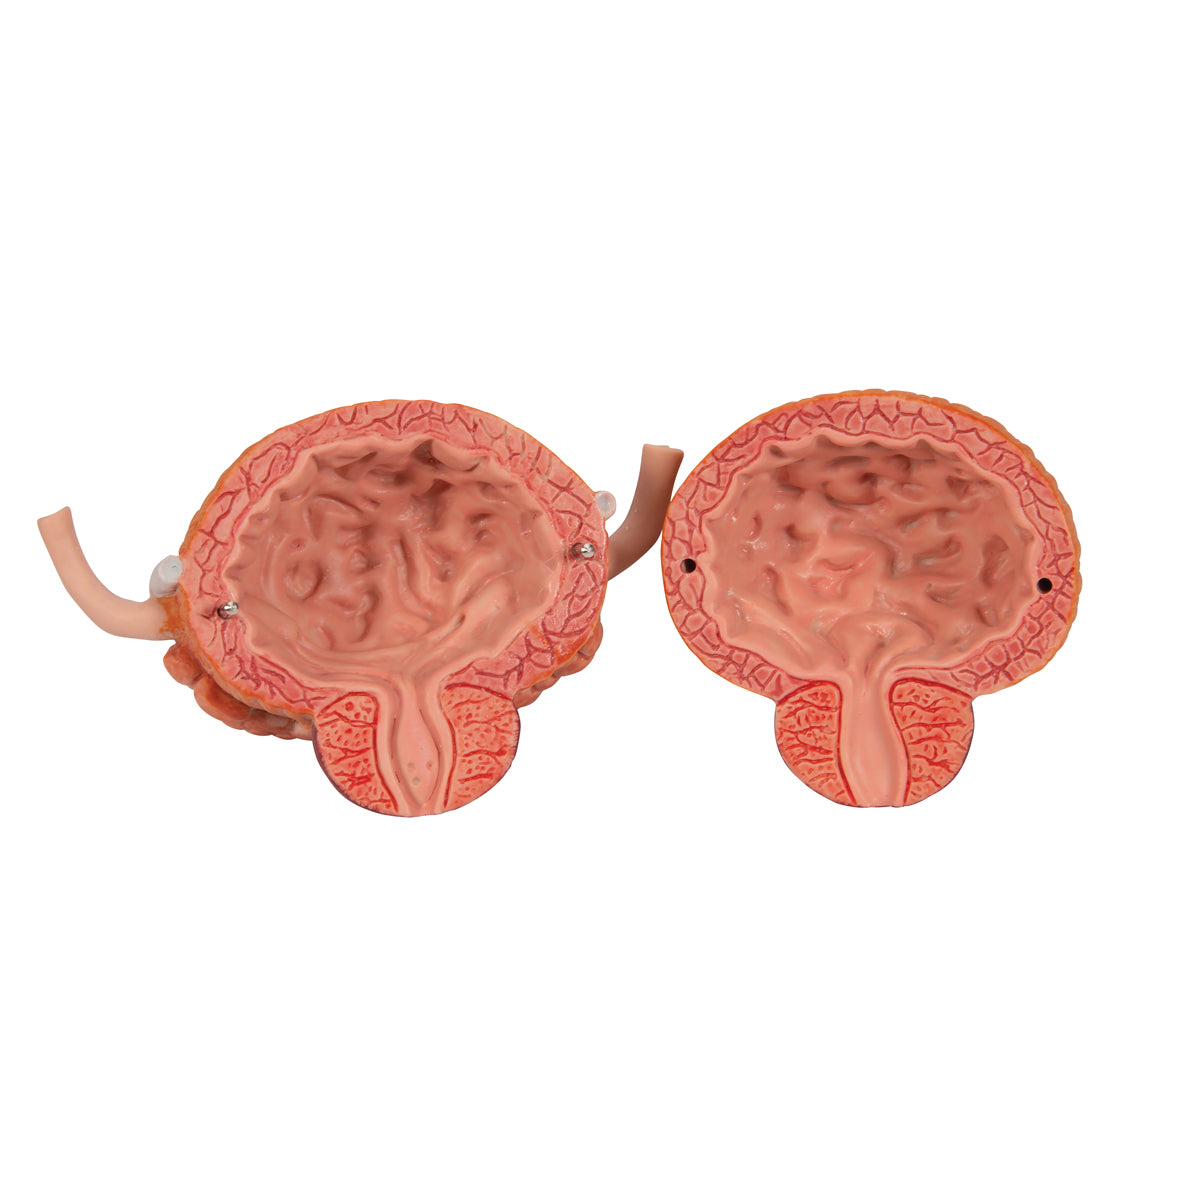 Komplett modell av njurar, urinledare och urinblåsa av båda könen